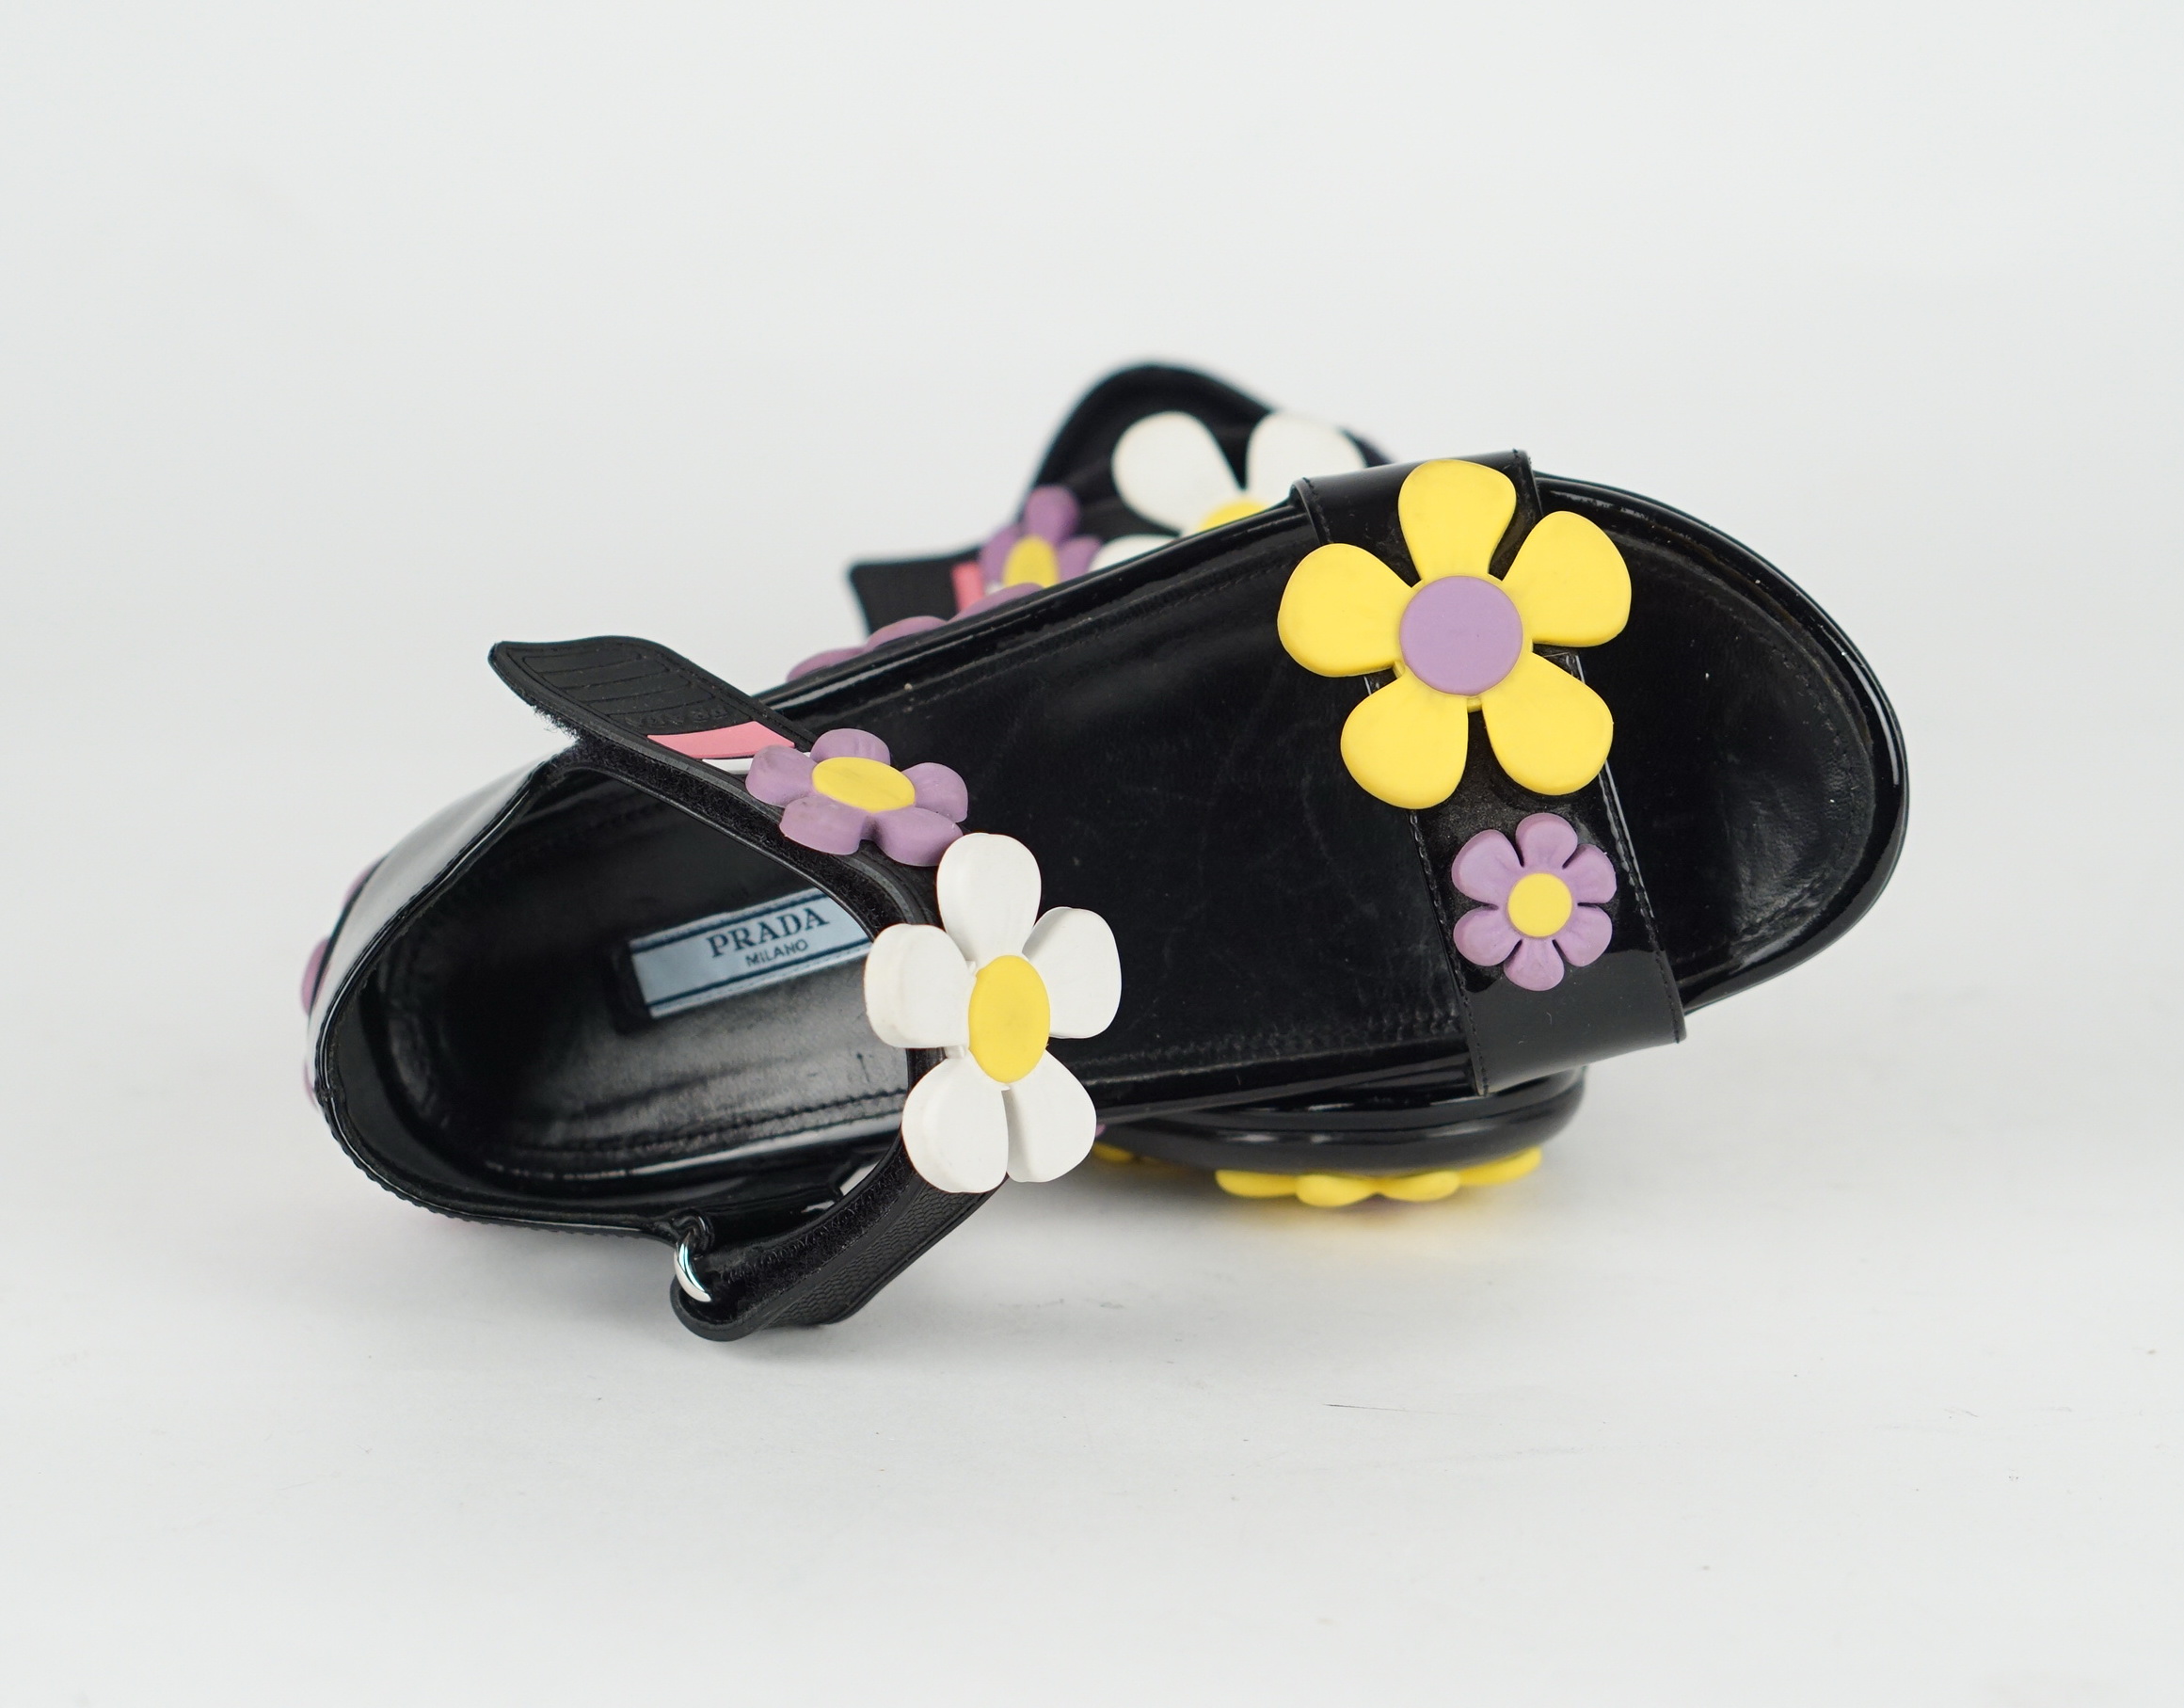  Flower Sandals 